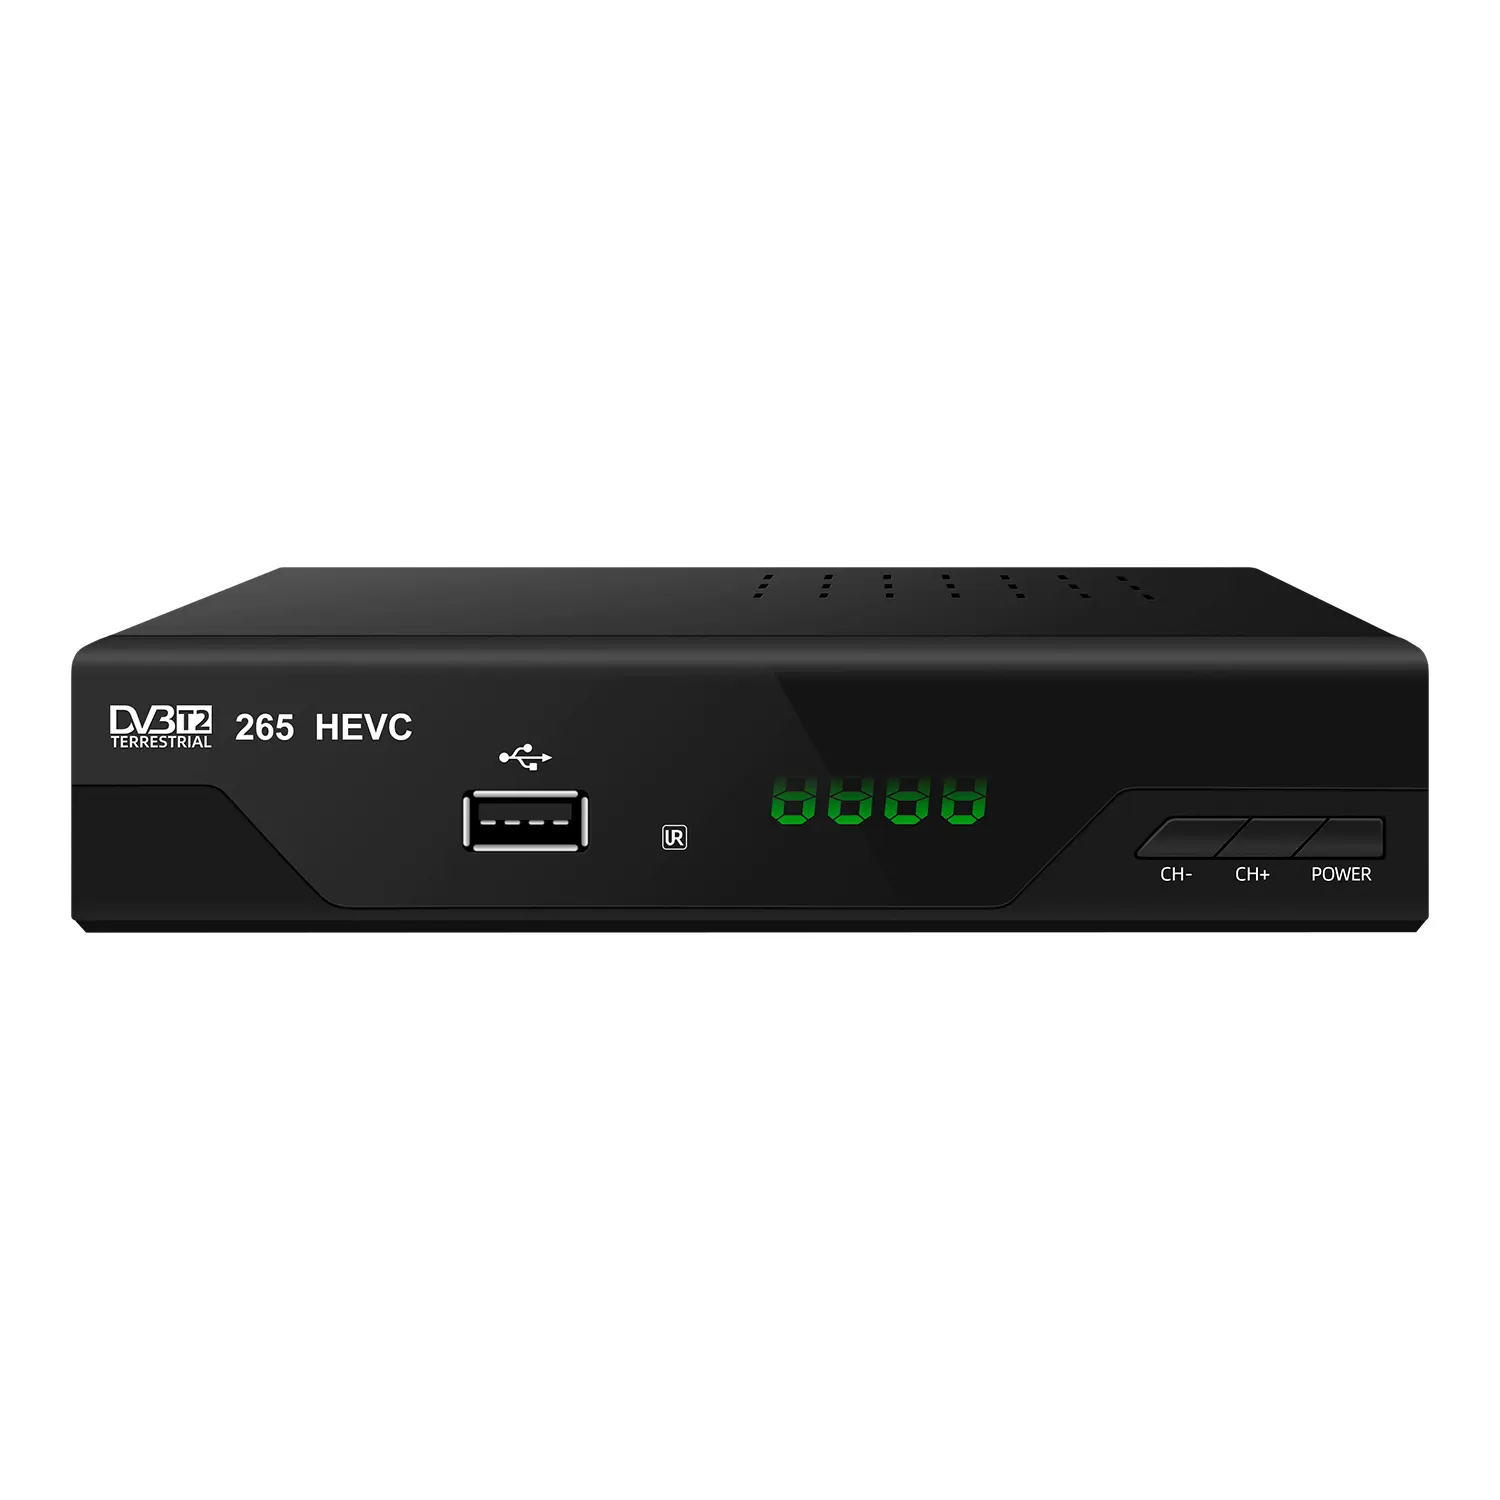 Dijital yeni özellikler ikiz tuner karasal TV alıcısı GX6702 H5 S5 10bit dvbt2 FTA ip tv dekoder set top box h265 dvb-t2